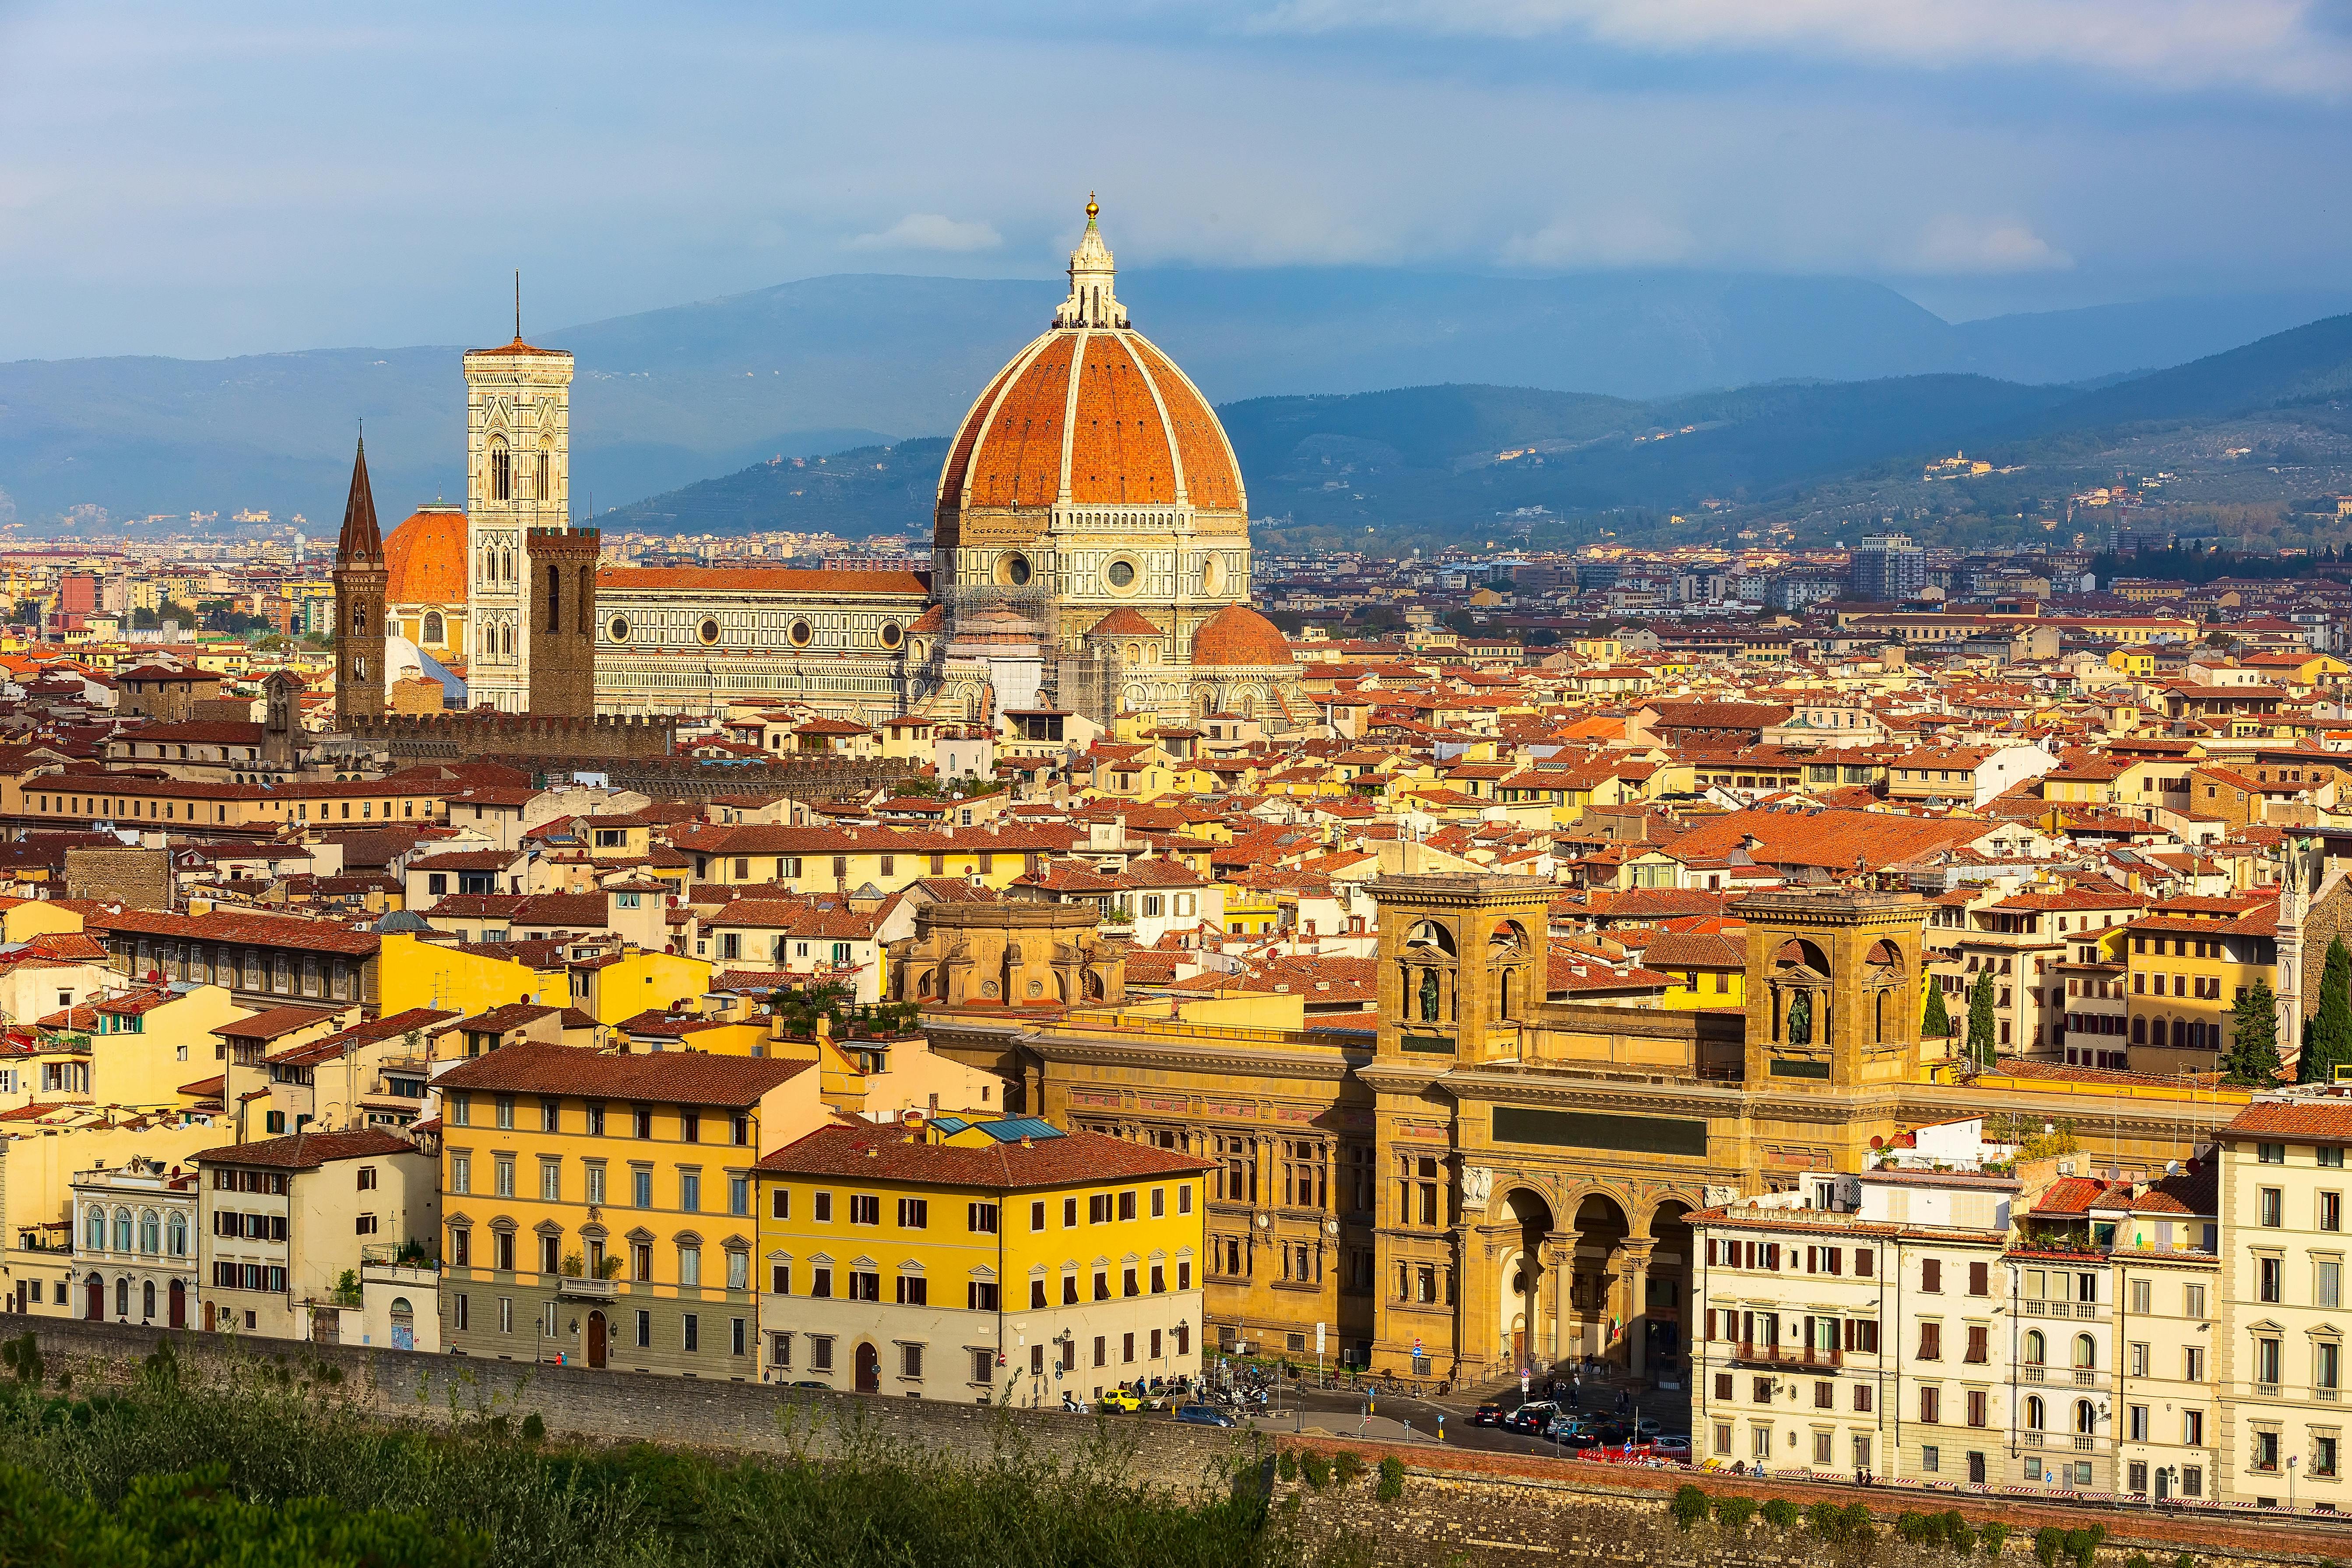 Stadtrundfahrt durch Florenz ab Rom mit dem Hochgeschwindigkeitszug